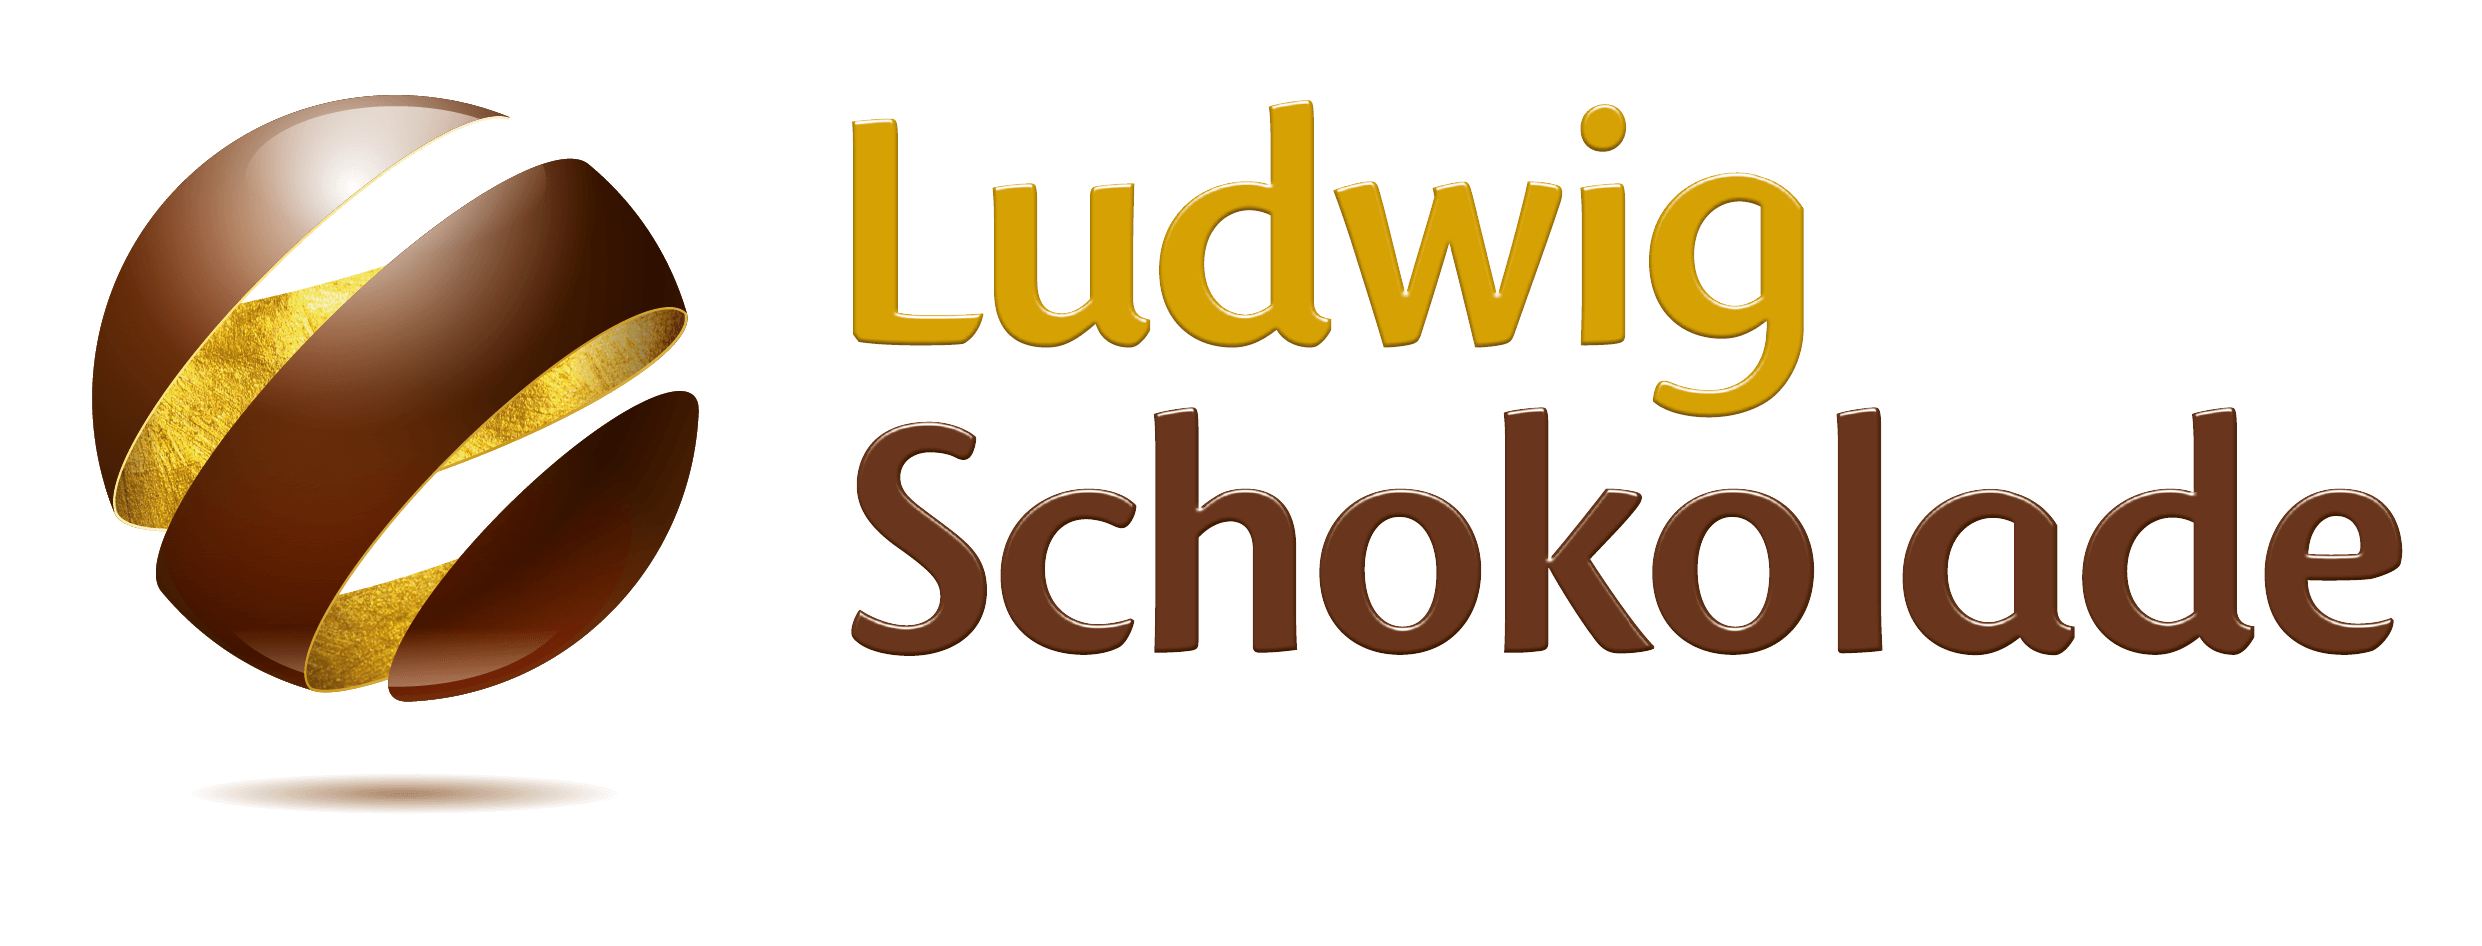 Logo - Ludwig Schokolade